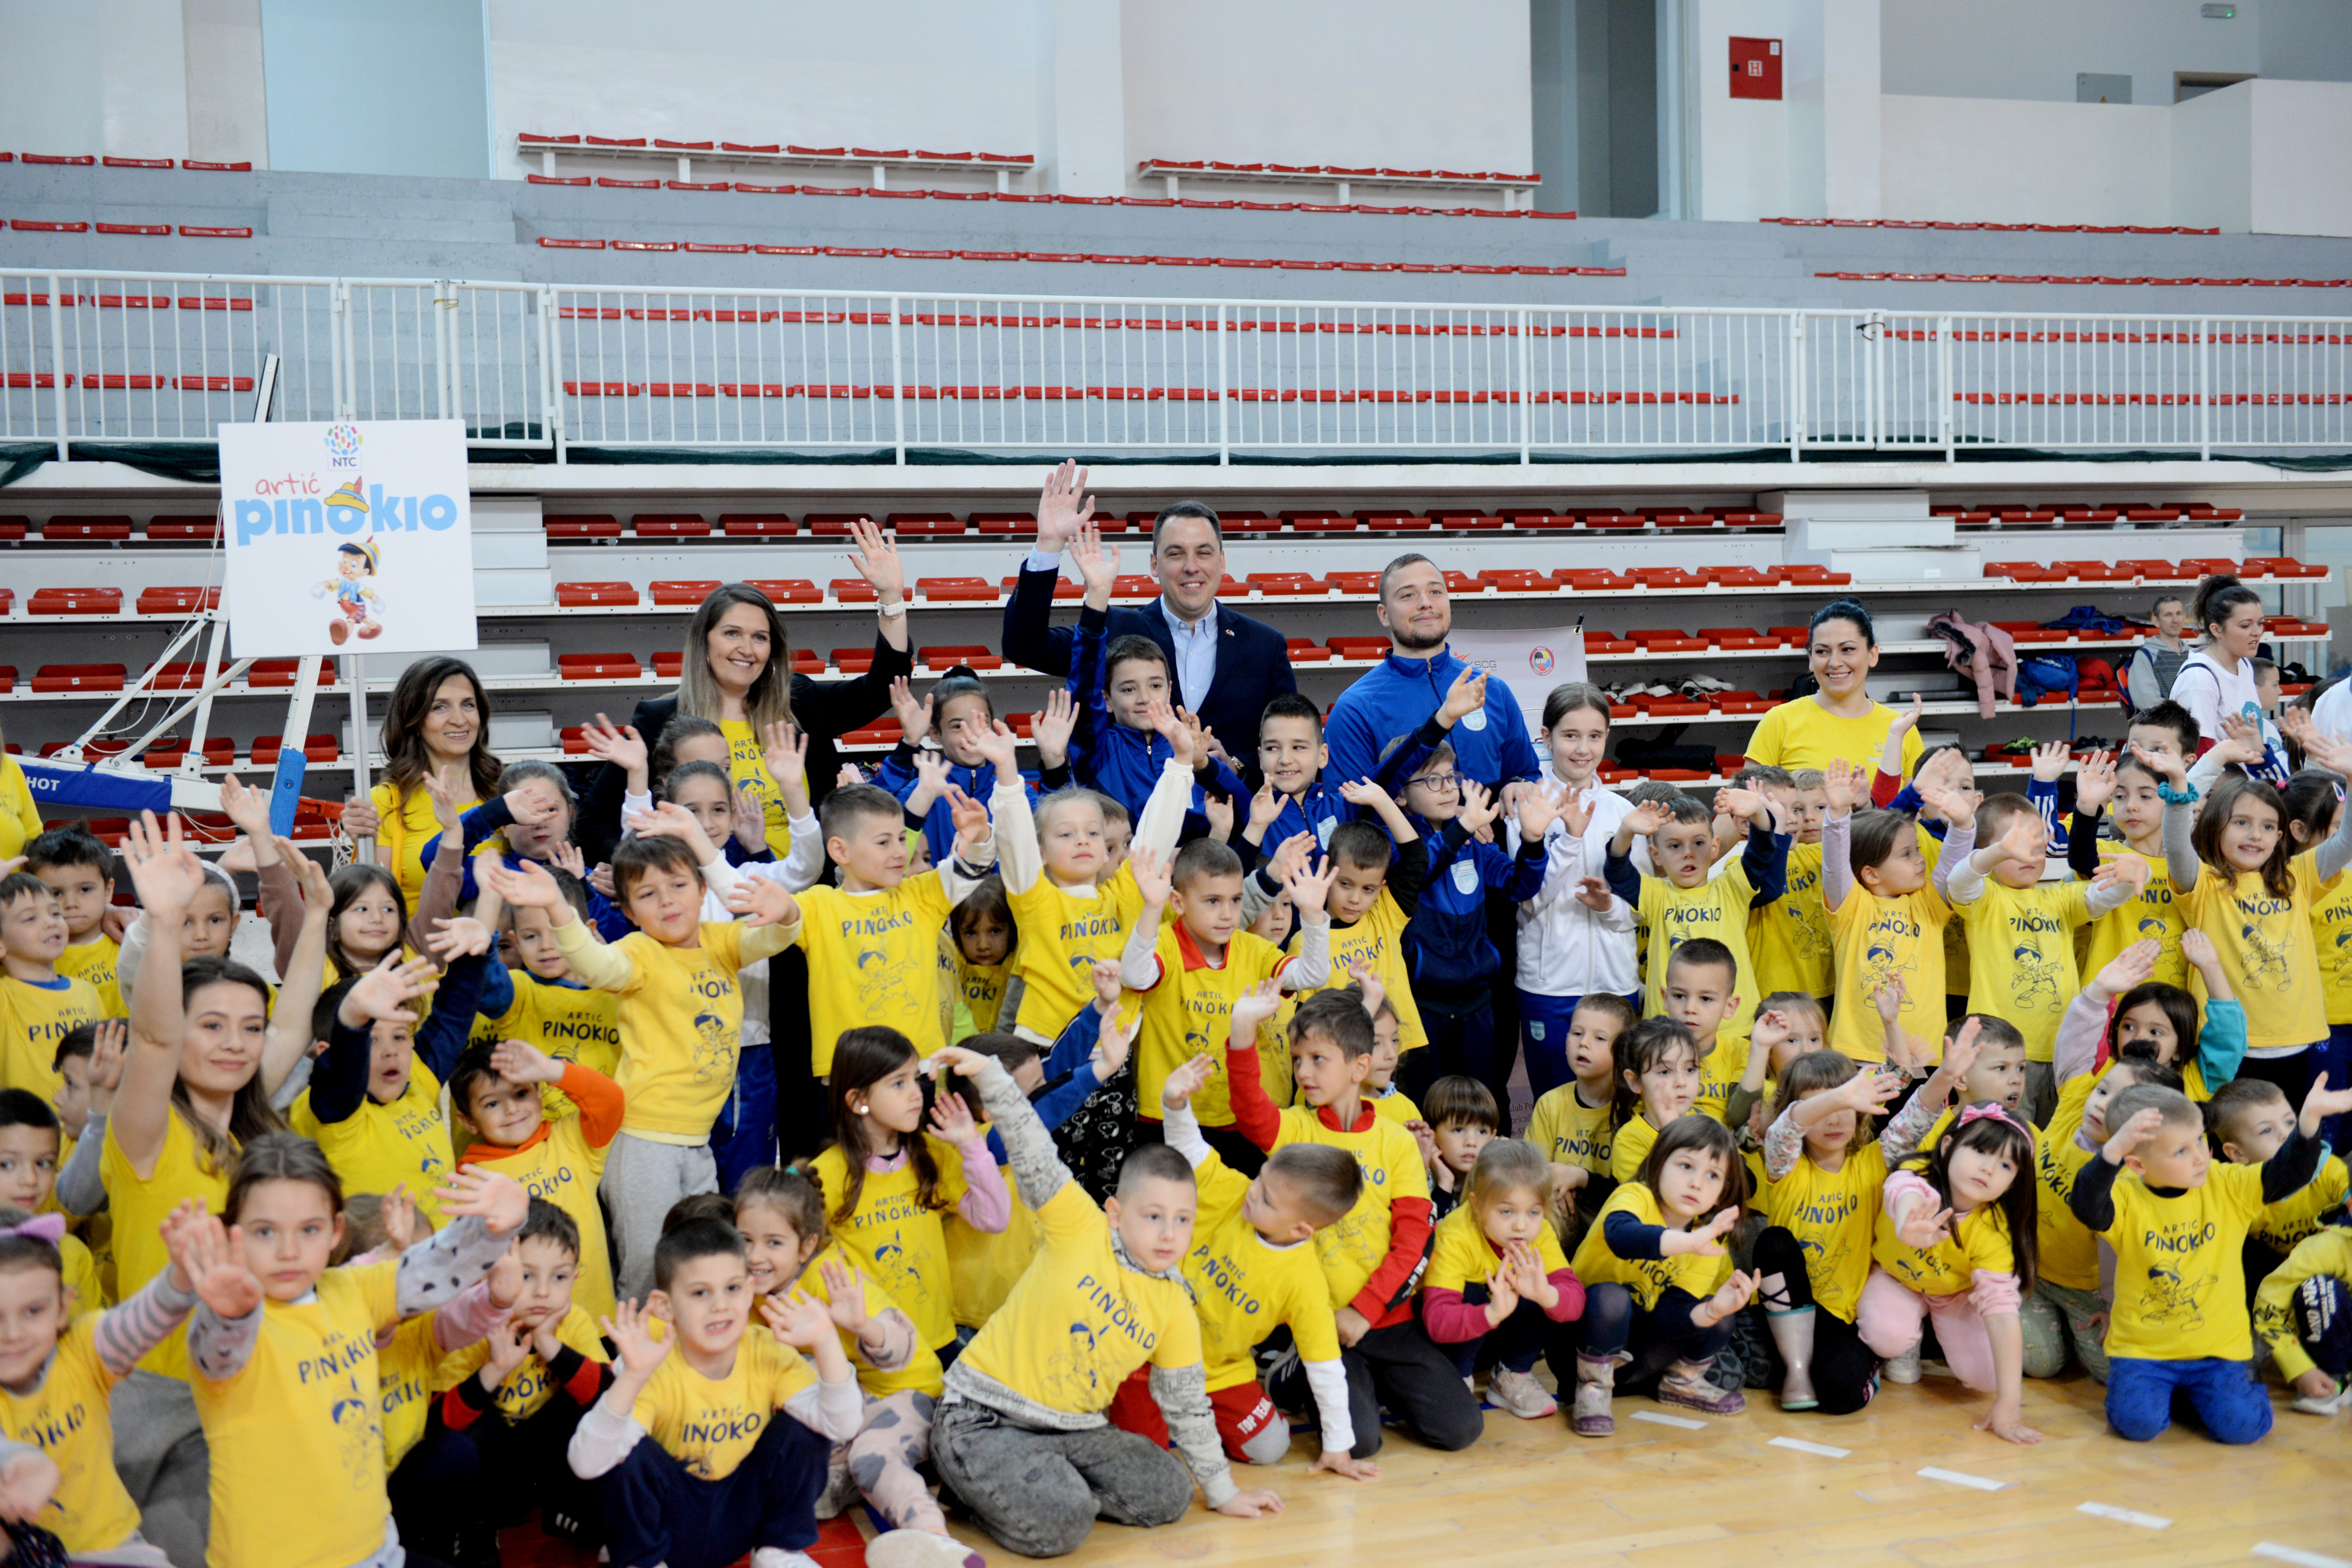 Vuković otvorio manifestaciju "Najmlađi su za sport": Stvaramo najbolje uslove za bavljenje sportom